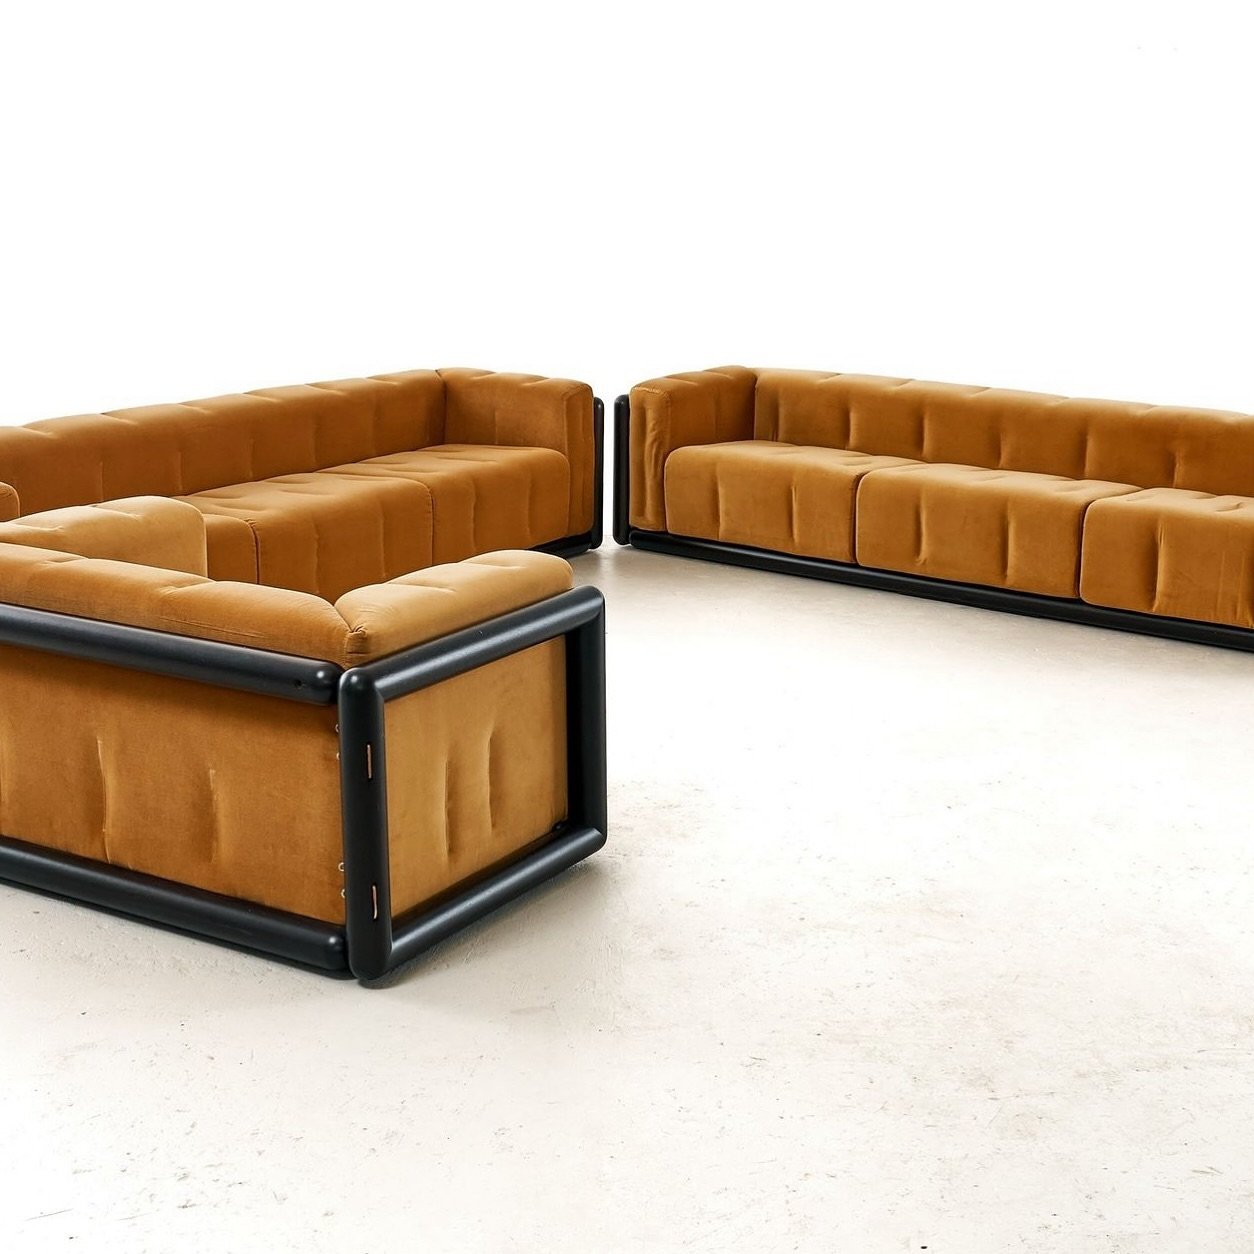 &lsquo;Cornaro&rsquo; sofa by Carlo Scarpa for Studio Simon, Italy, 1973 🥃